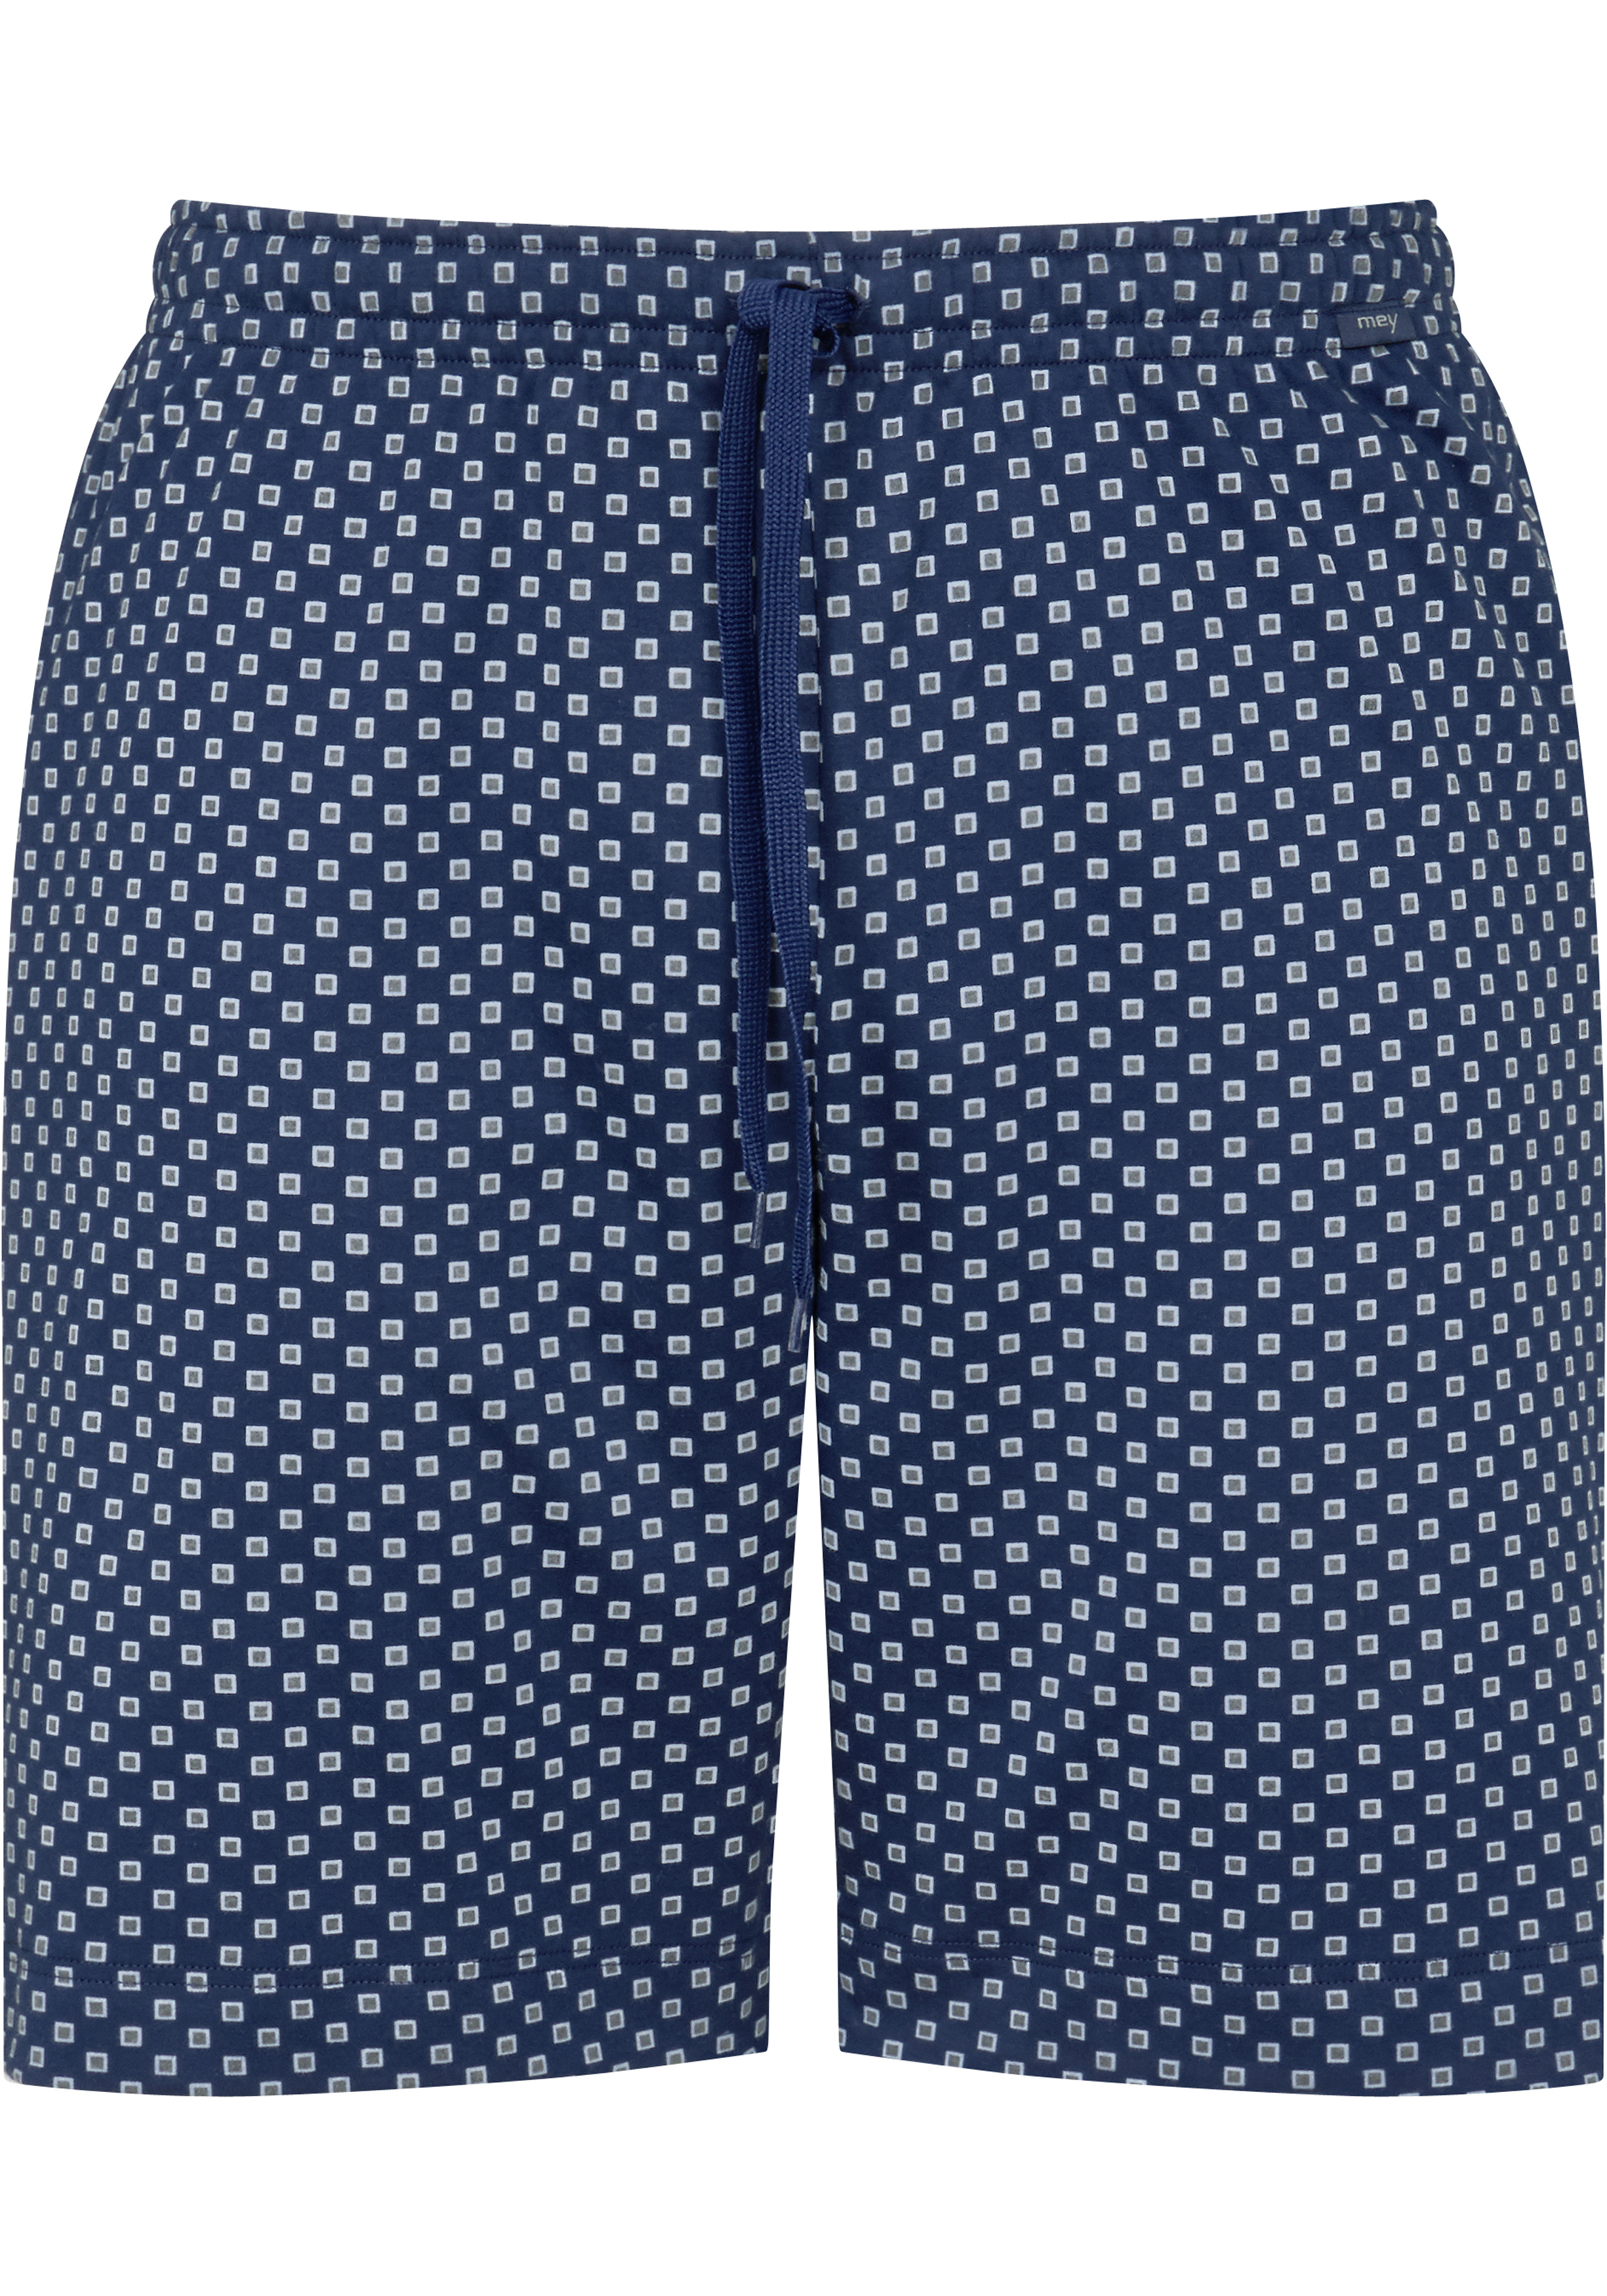 Mey pyjamabroek kort, Gisborne, blauw dessin